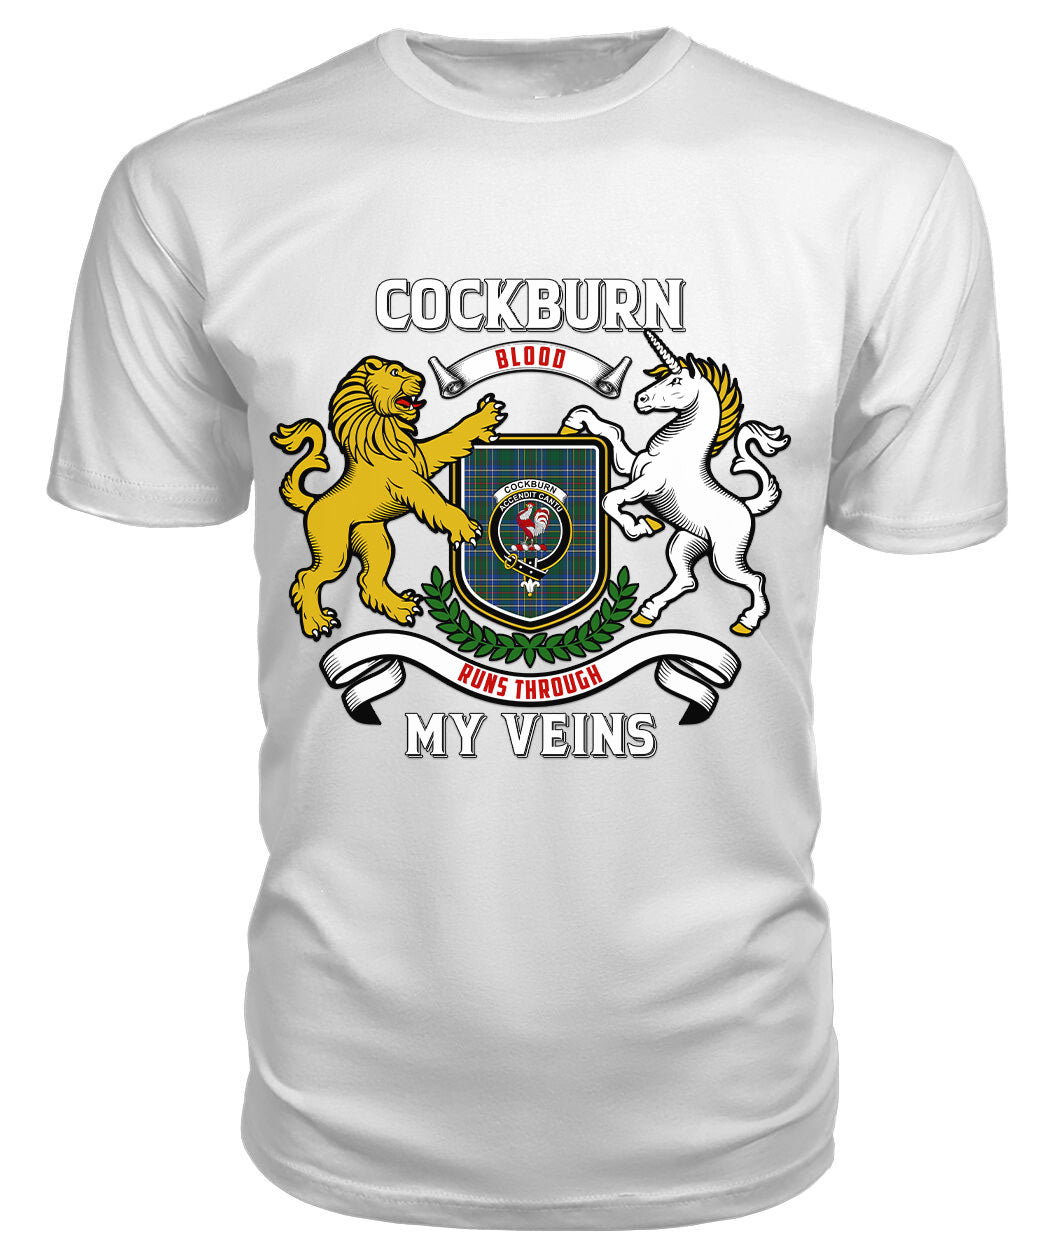 Cockburn Ancient Tartan Crest 2D T-shirt - Blood Runs Through My Veins Style